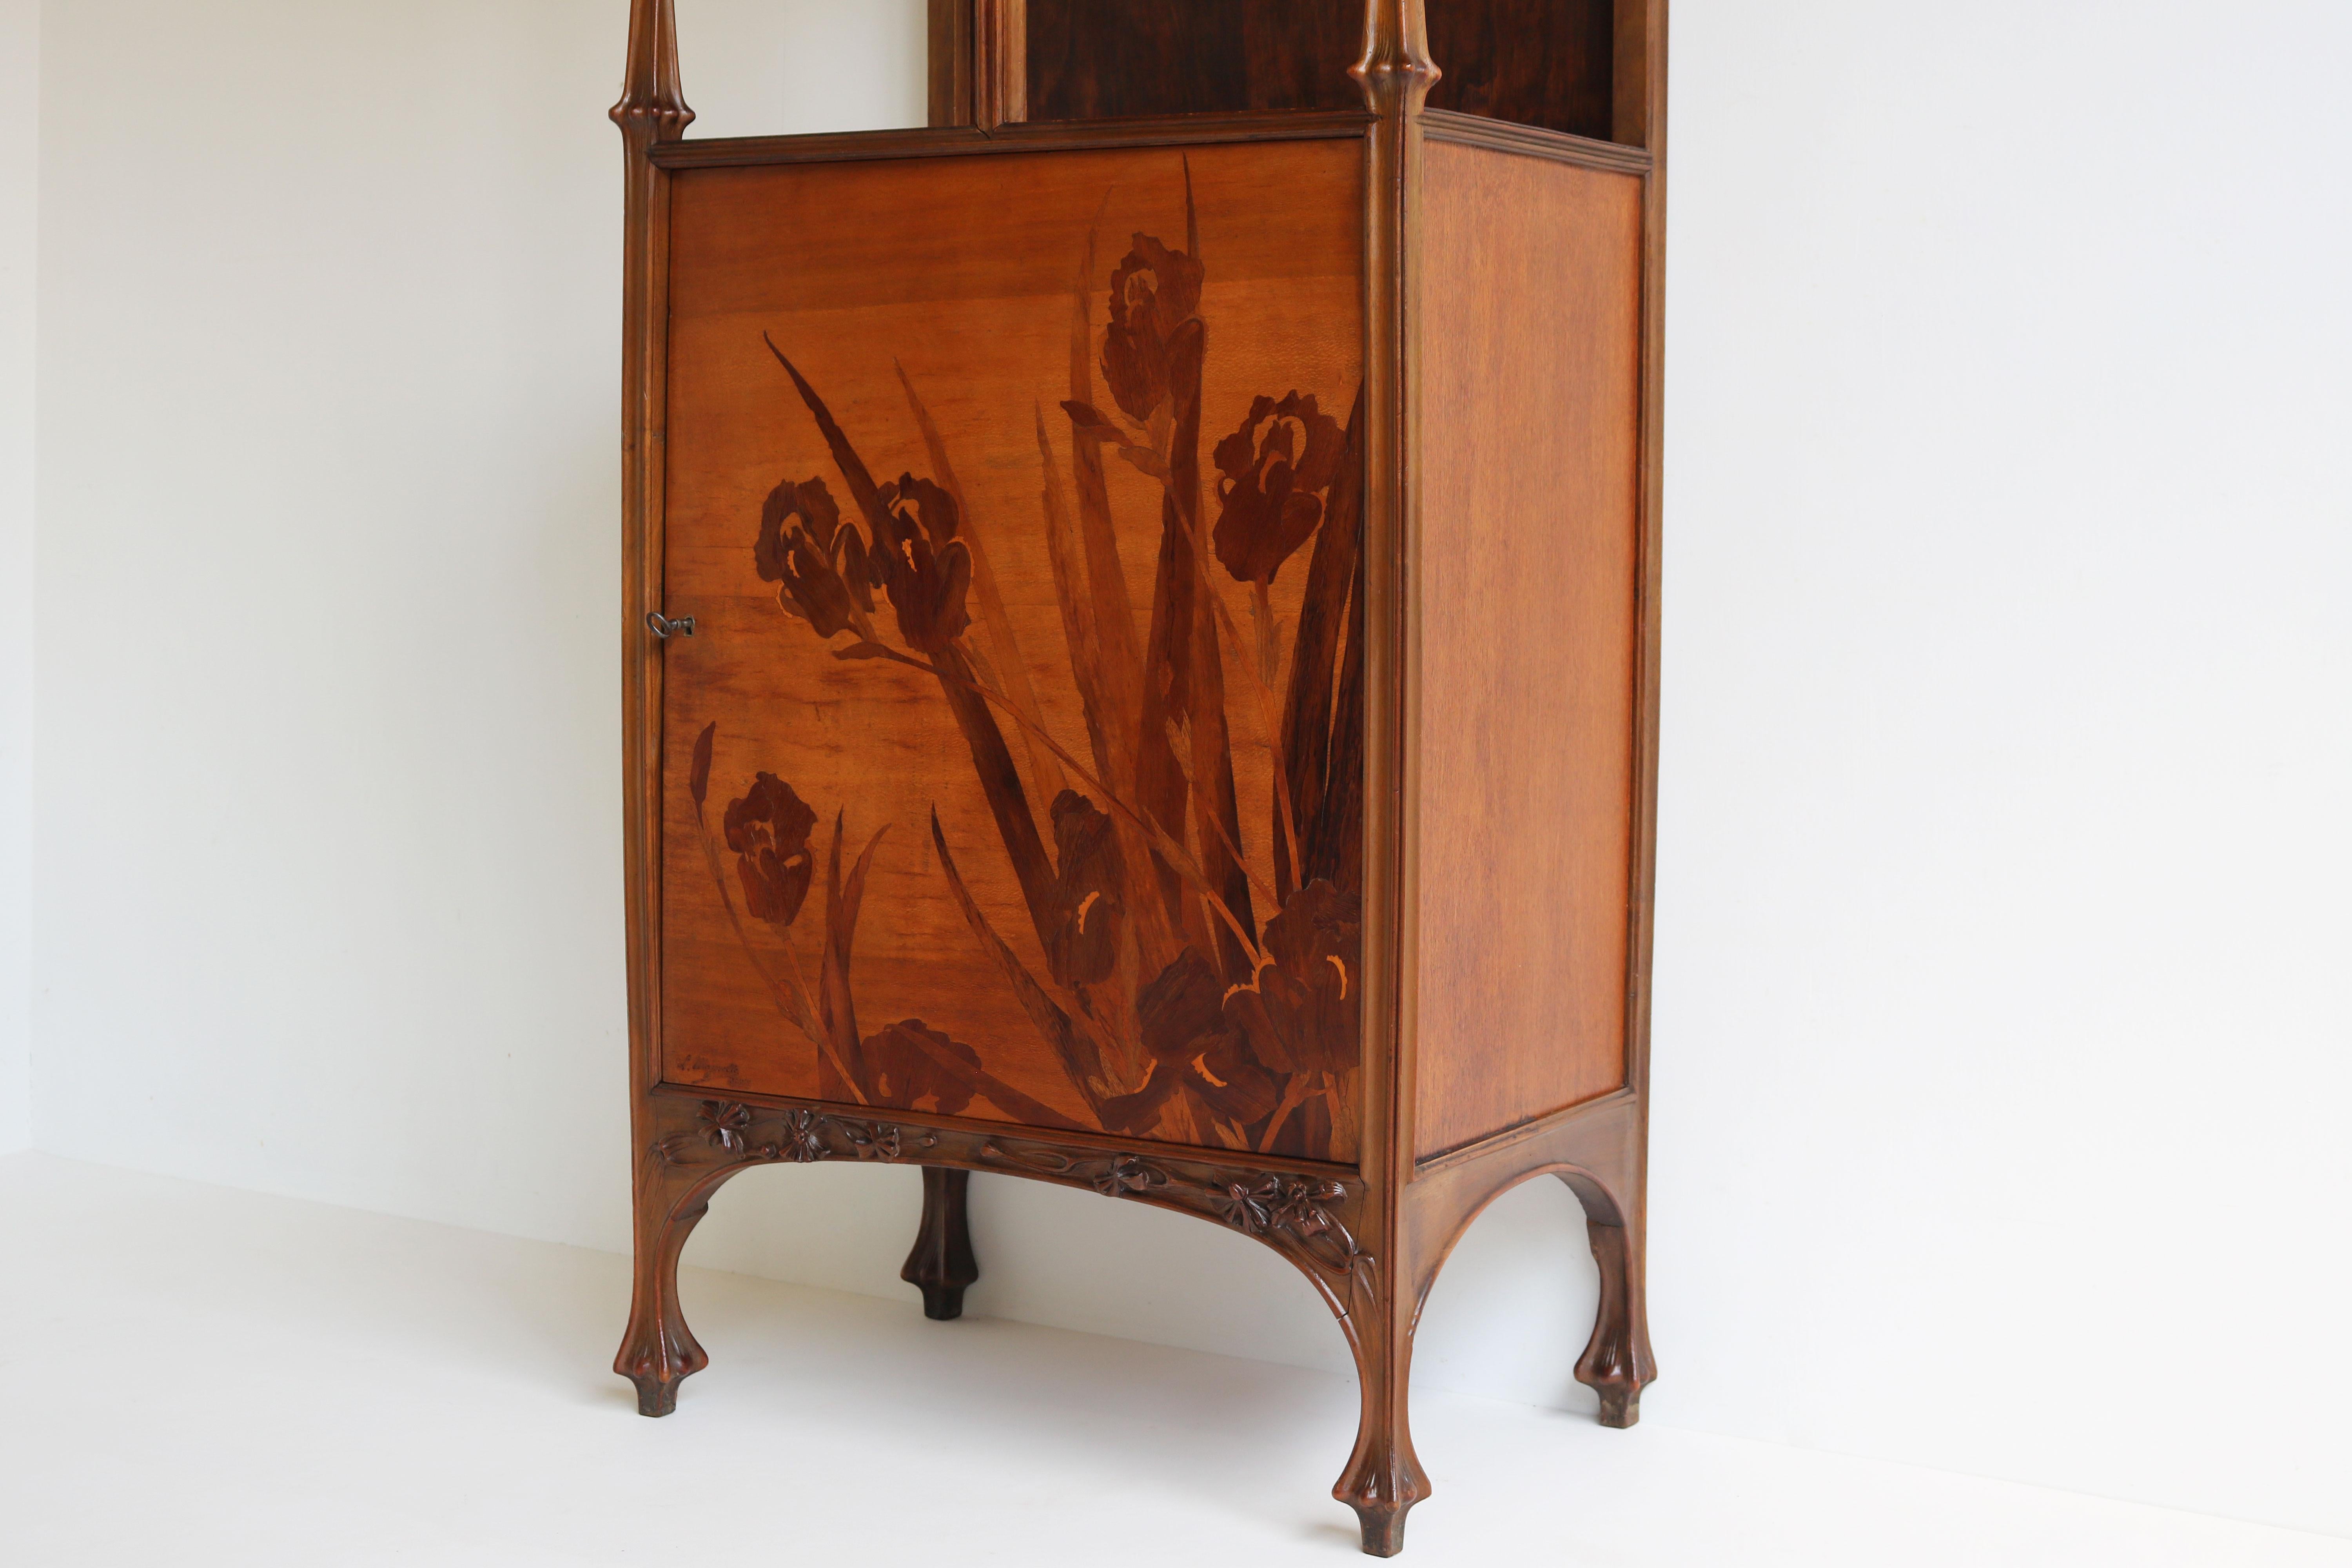 Exceptional Art Nouveau Cabinet by Louis Majorelle 1900 French Antique Nancy For Sale 4